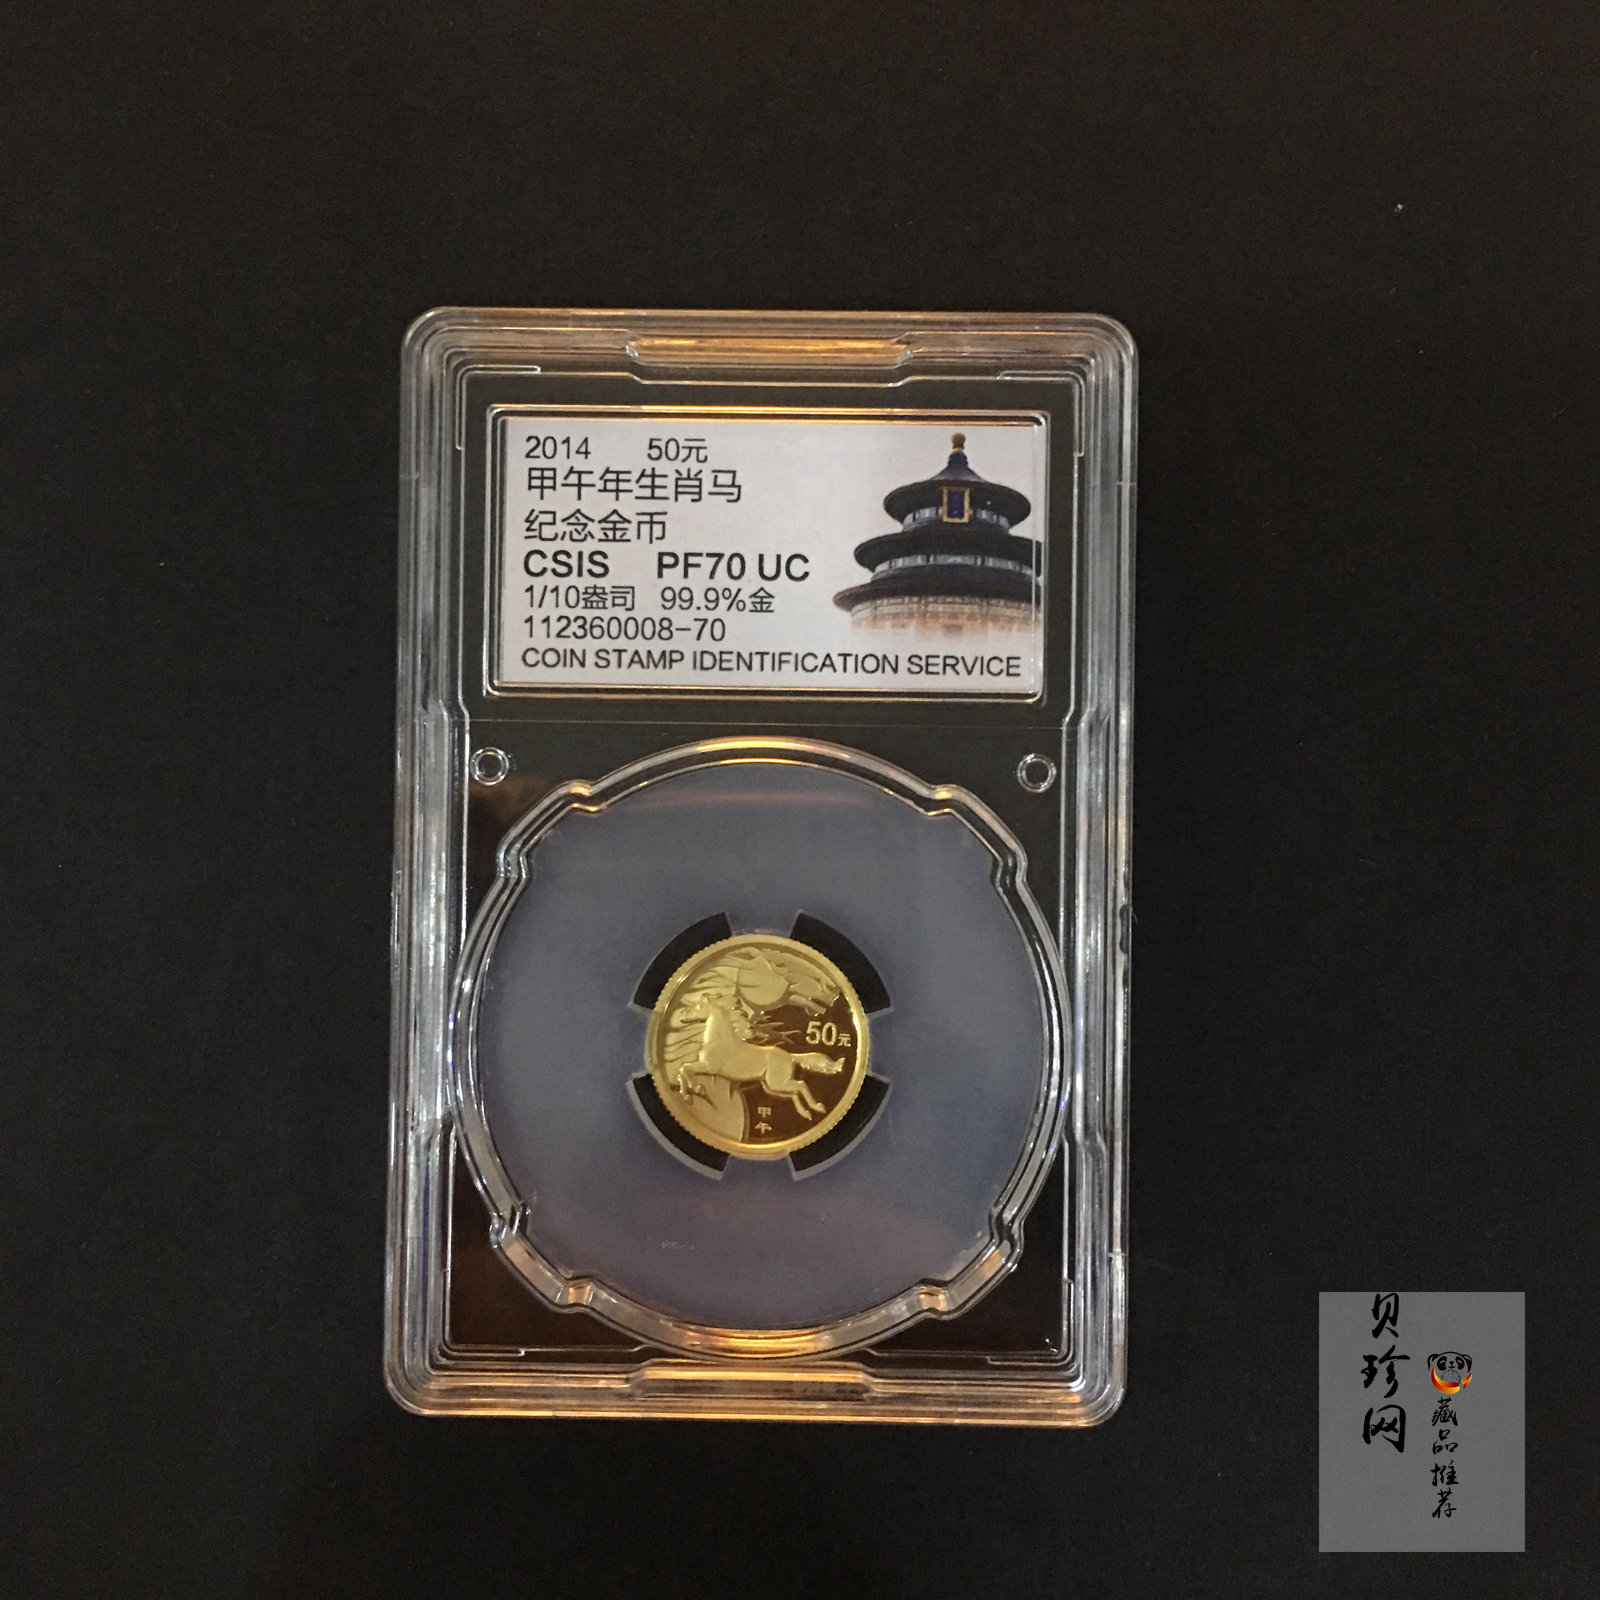 【131001】2014年甲午马年生肖1/10盎司精制金币